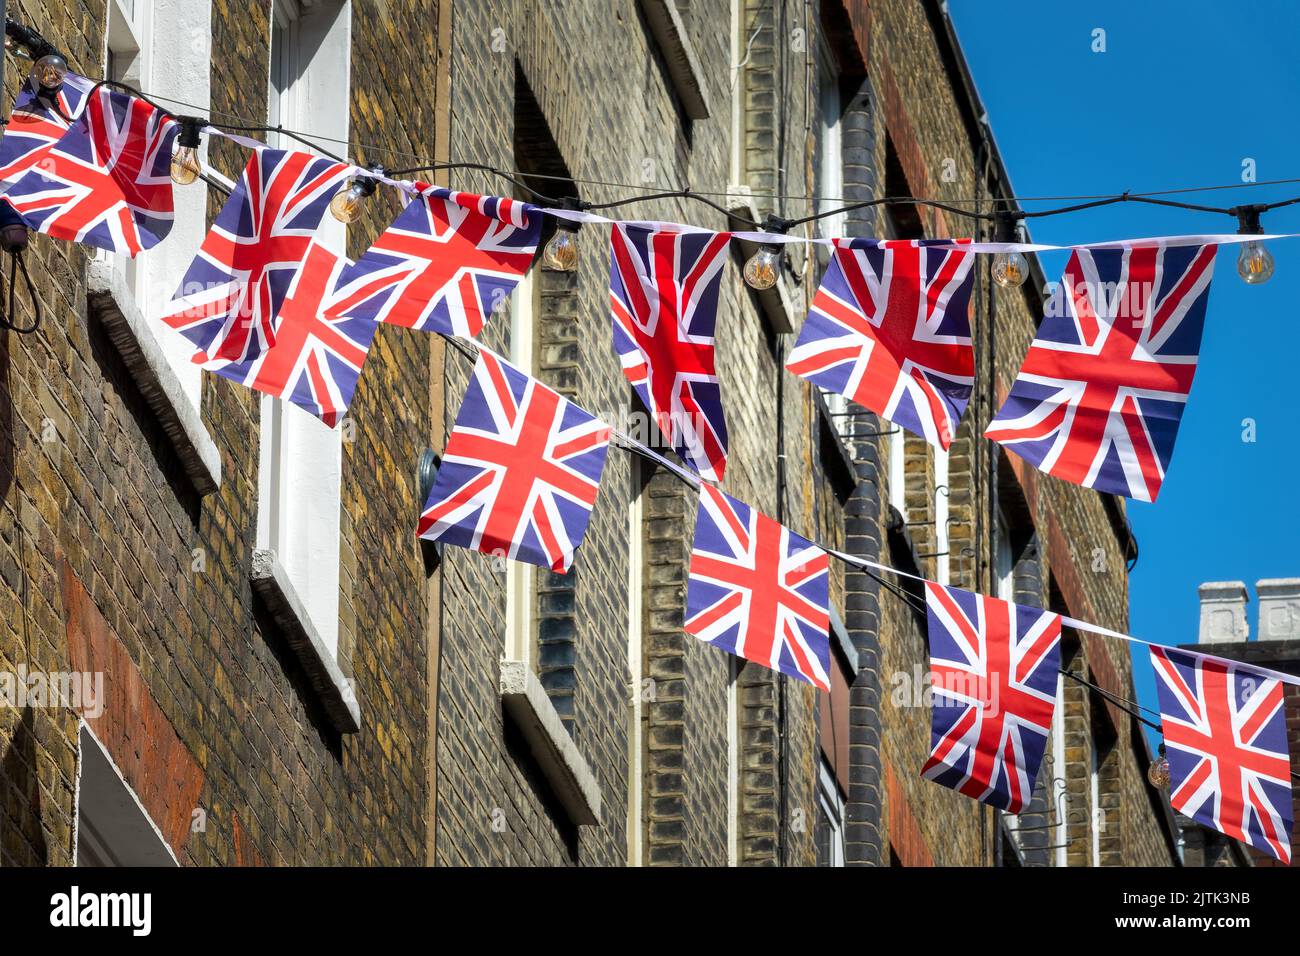 La bandera británica de la Union Jack garlands en una calle de Londres, Reino Unido Foto de stock